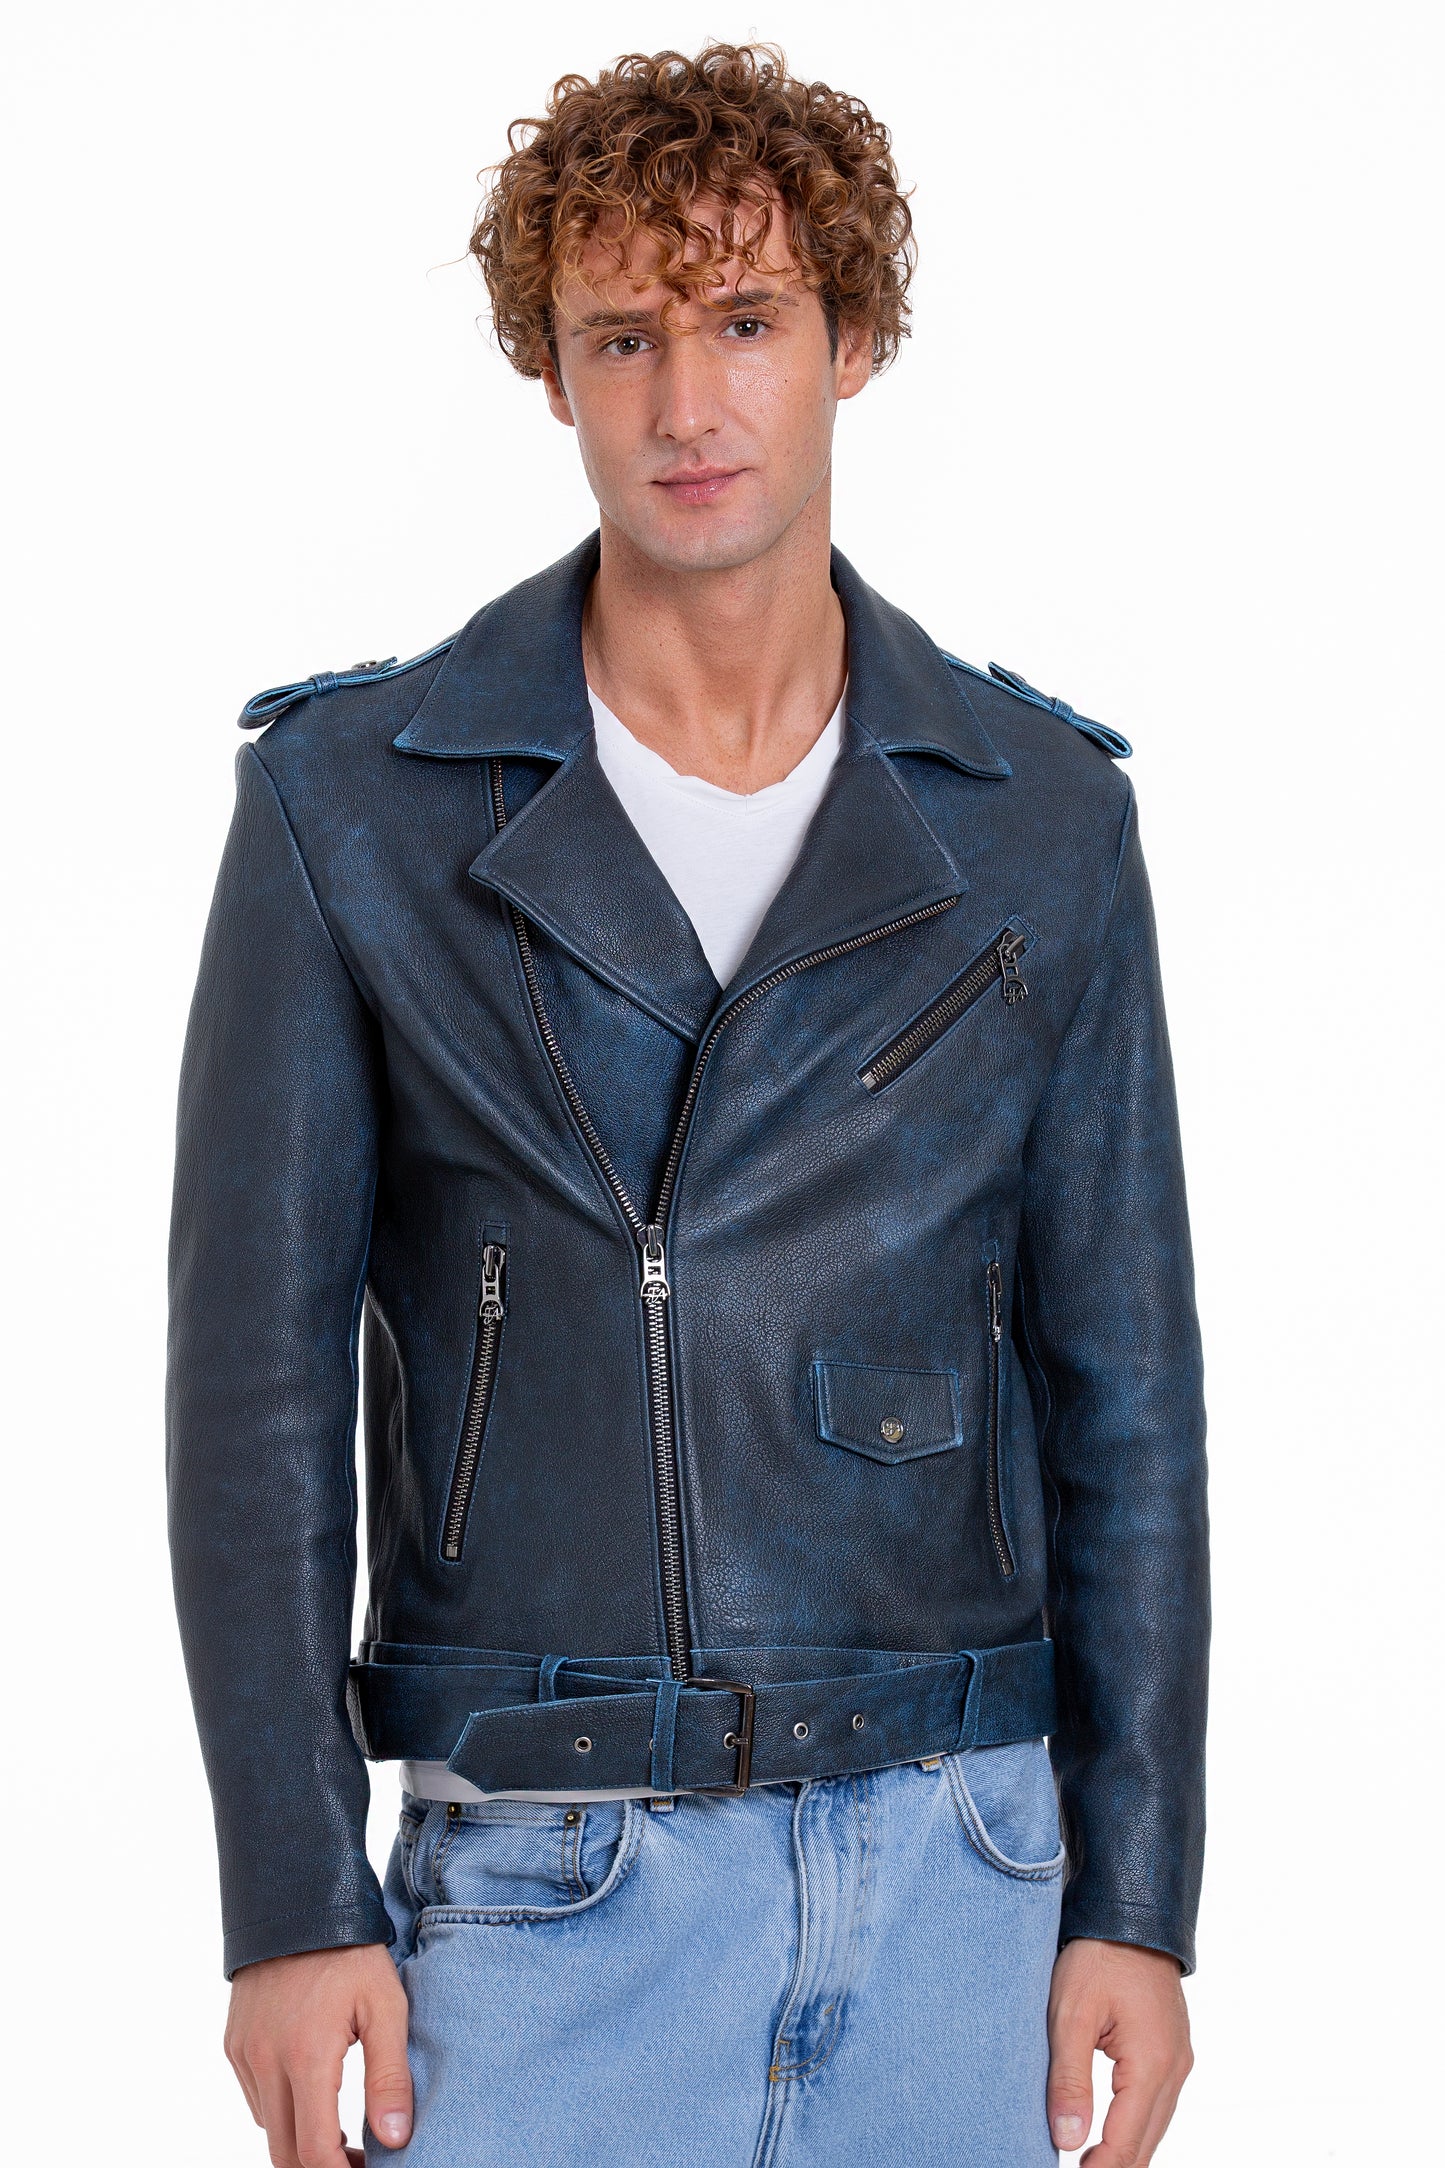 The Shanghai Blue Aged Leather Biker Men Jacket